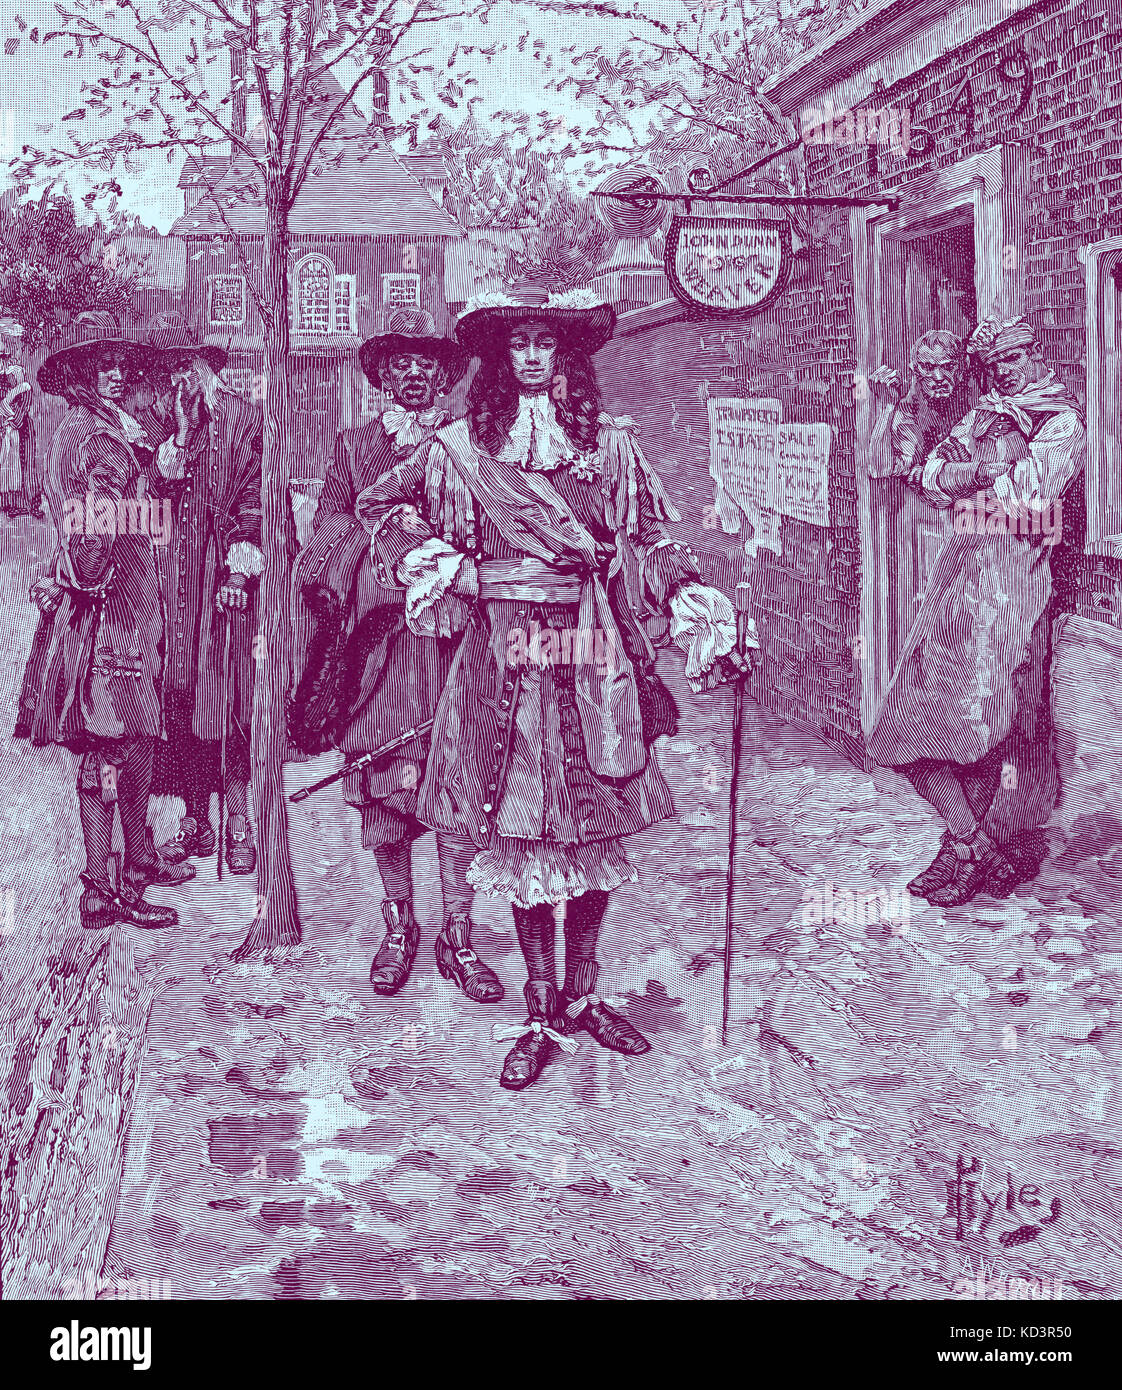 Sir Edmund Andros (6 décembre 1637 – 24 février 1714), gouverneur du Dominion de la Nouvelle-Angleterre jusqu'à ce qu'il soit renversé dans la Révolution de Boston, 1689. Illustration de Howard Pyle, 1883 Banque D'Images